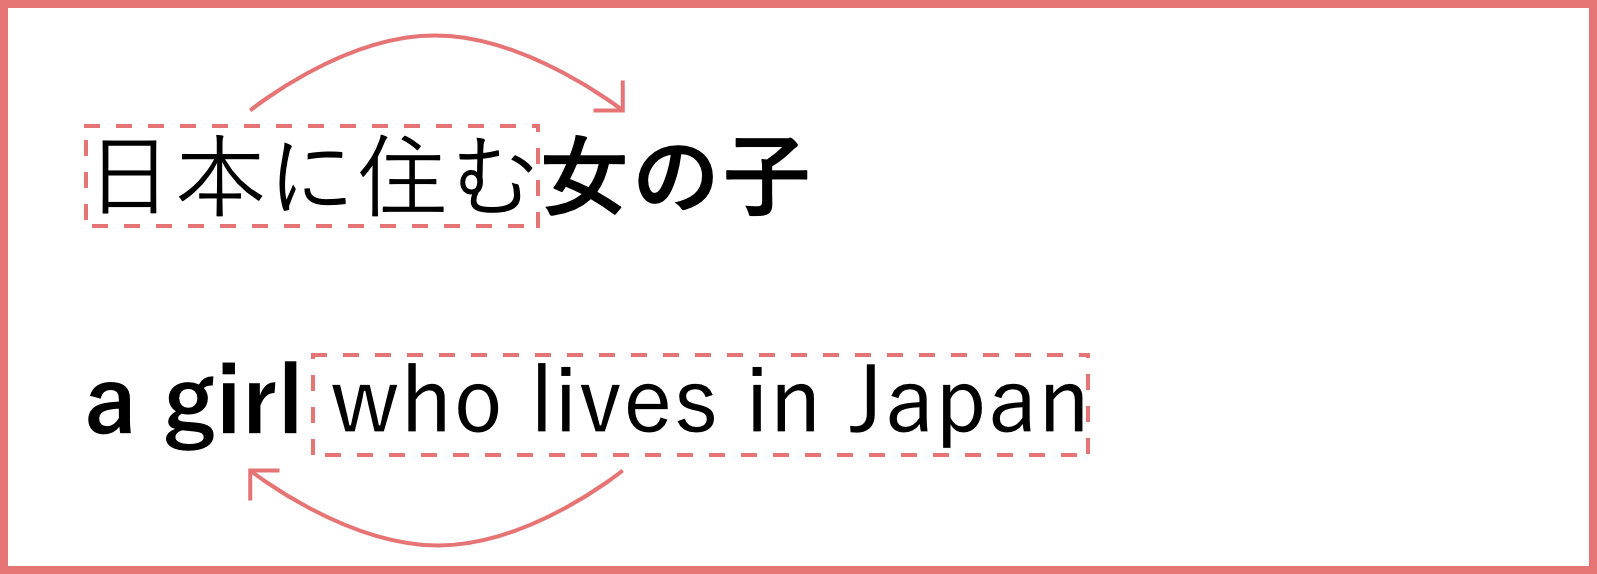 日本に住む女の子 a girl who lives in Japan